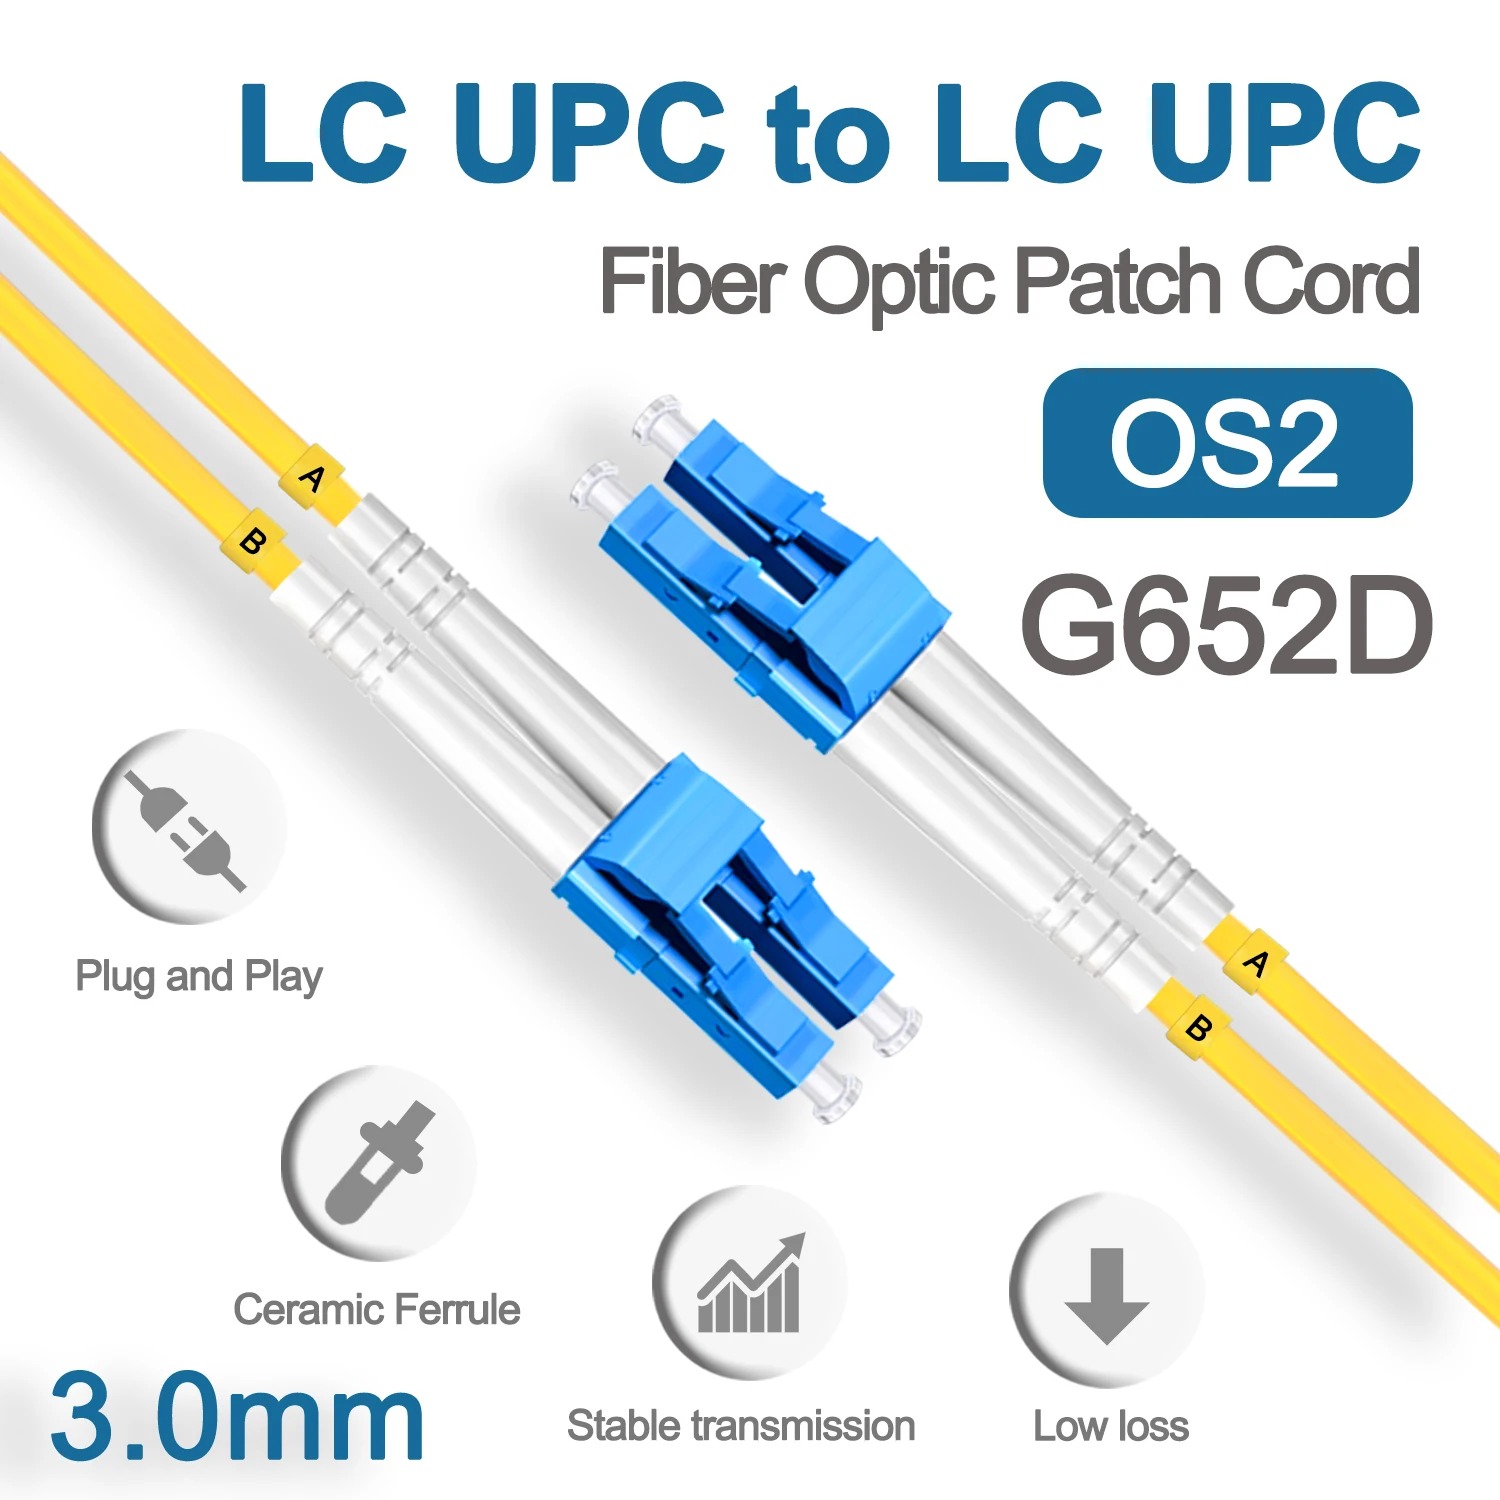 High-Performance LC UPC Fiber Optical Patch Jumper para sa FTTH at Mga Data Center